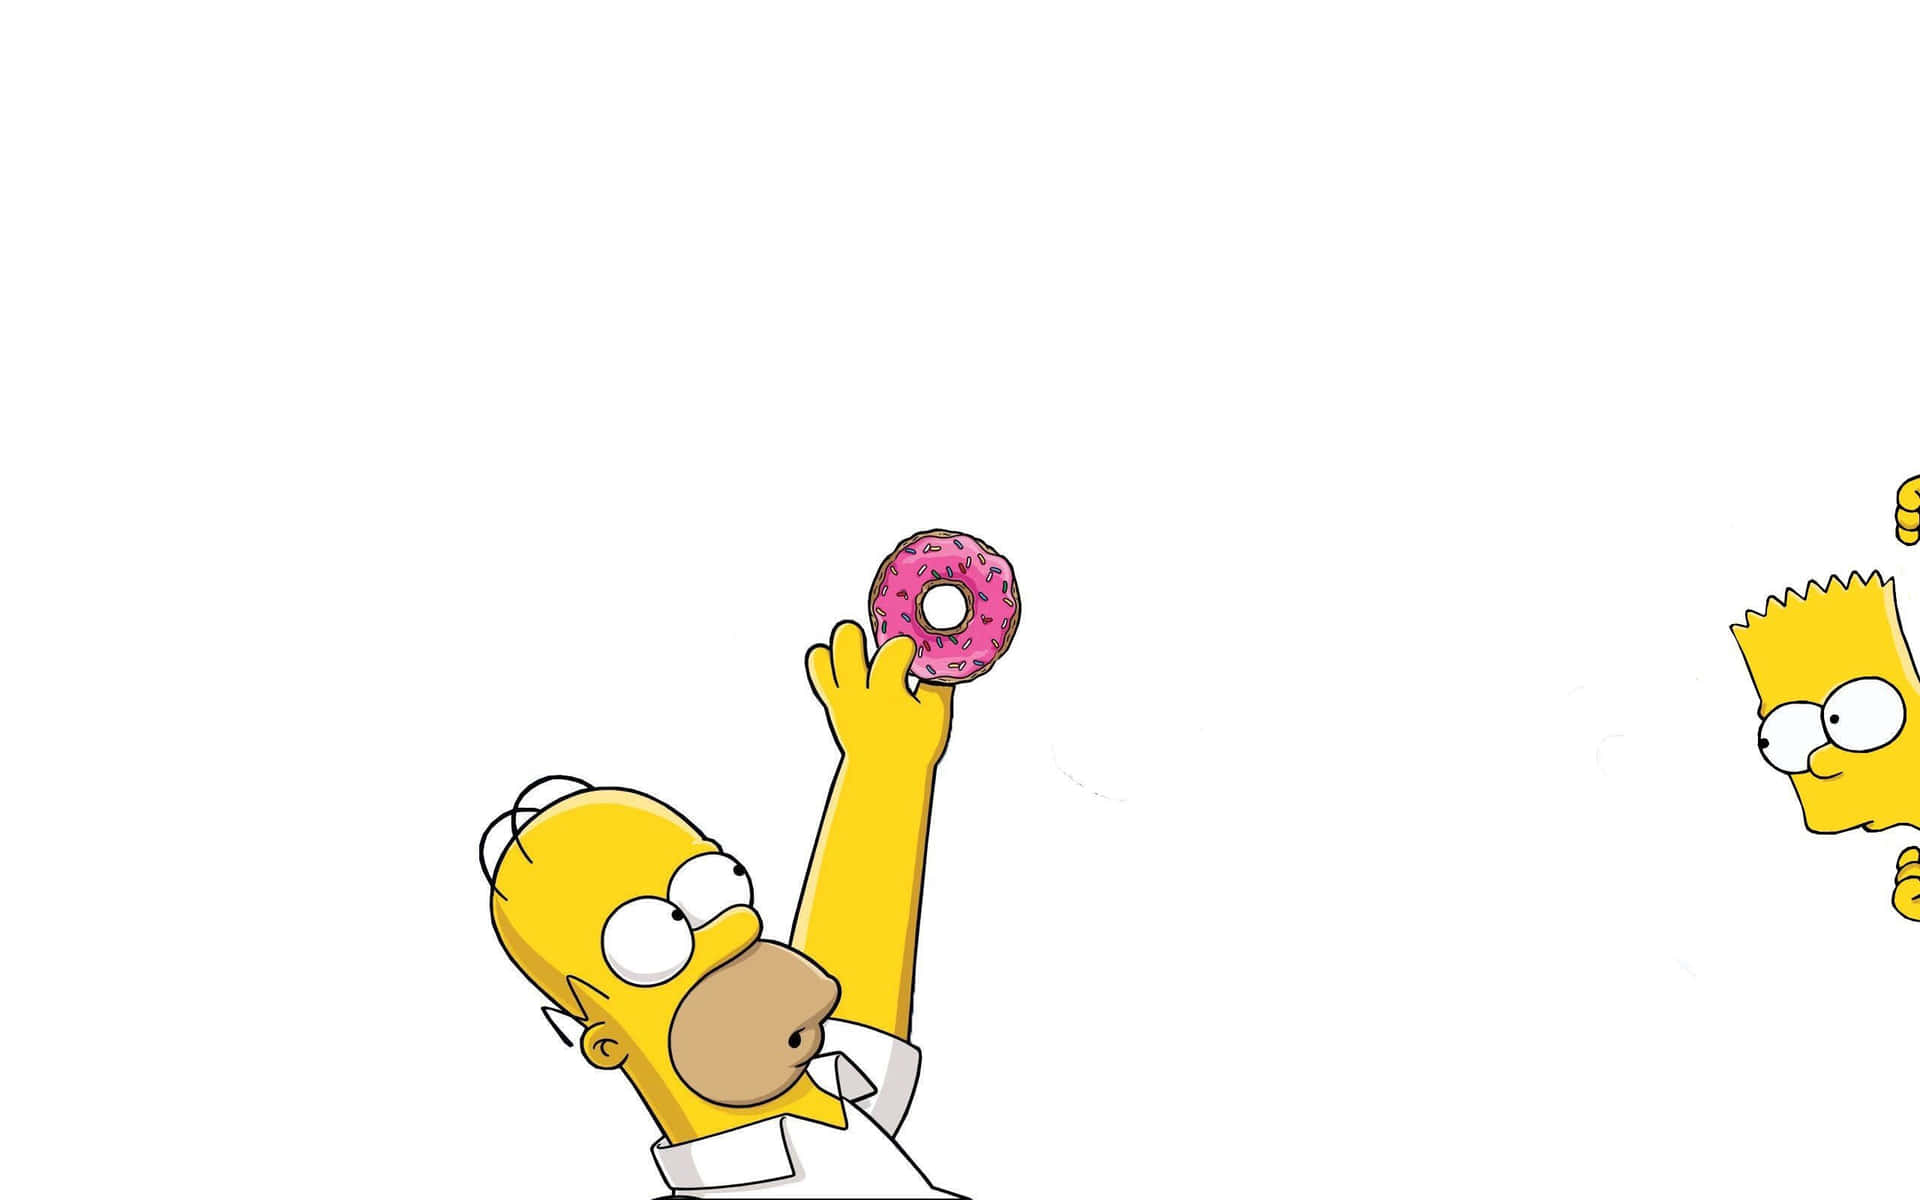 Hintergrundvon The Simpsons In 2560 X 1600.